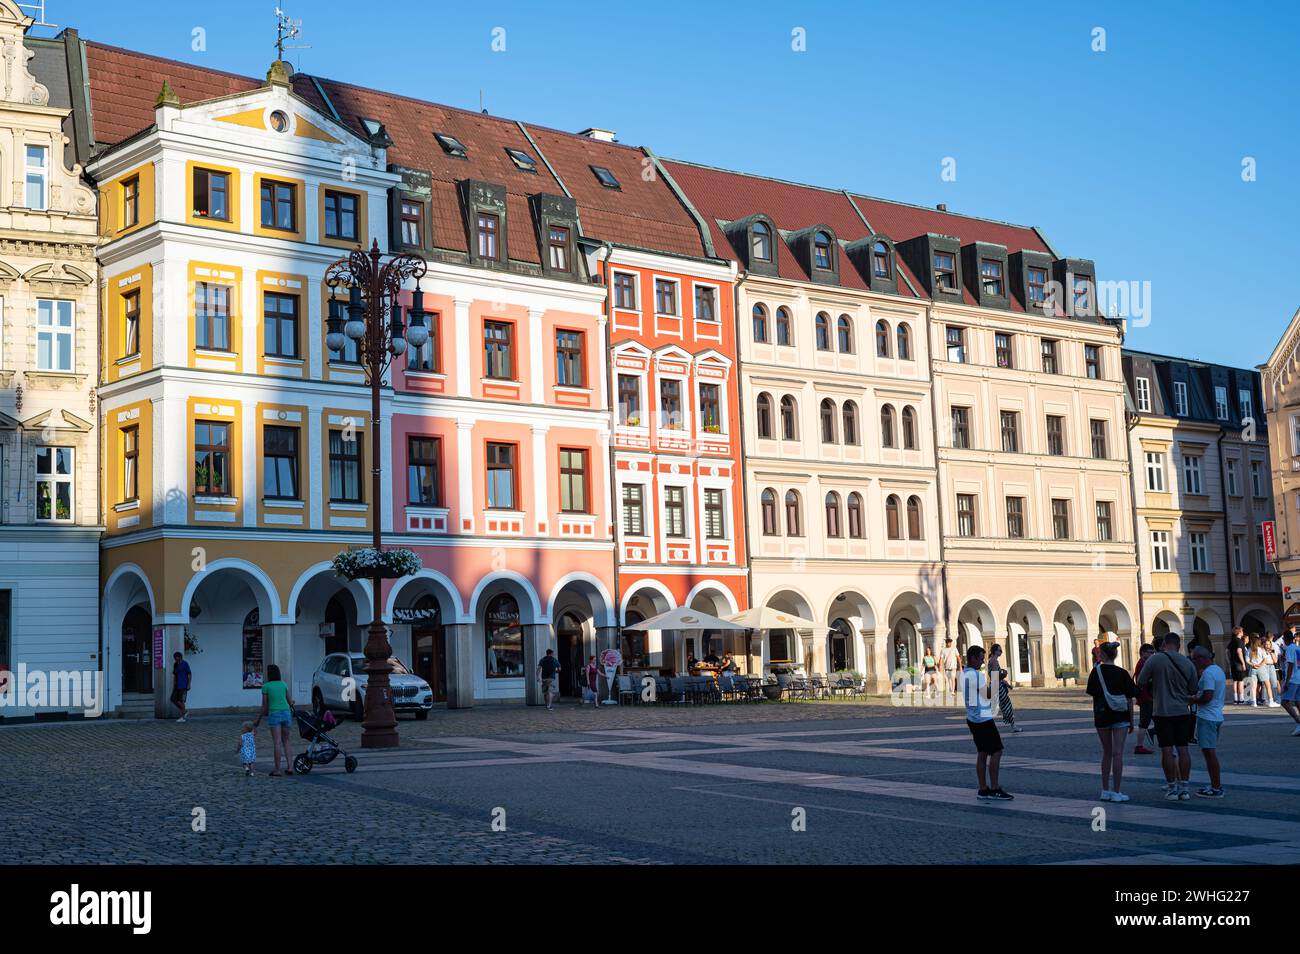 Maisons colorées sur la place de la vieille ville de Liberec, République tchèque Banque D'Images